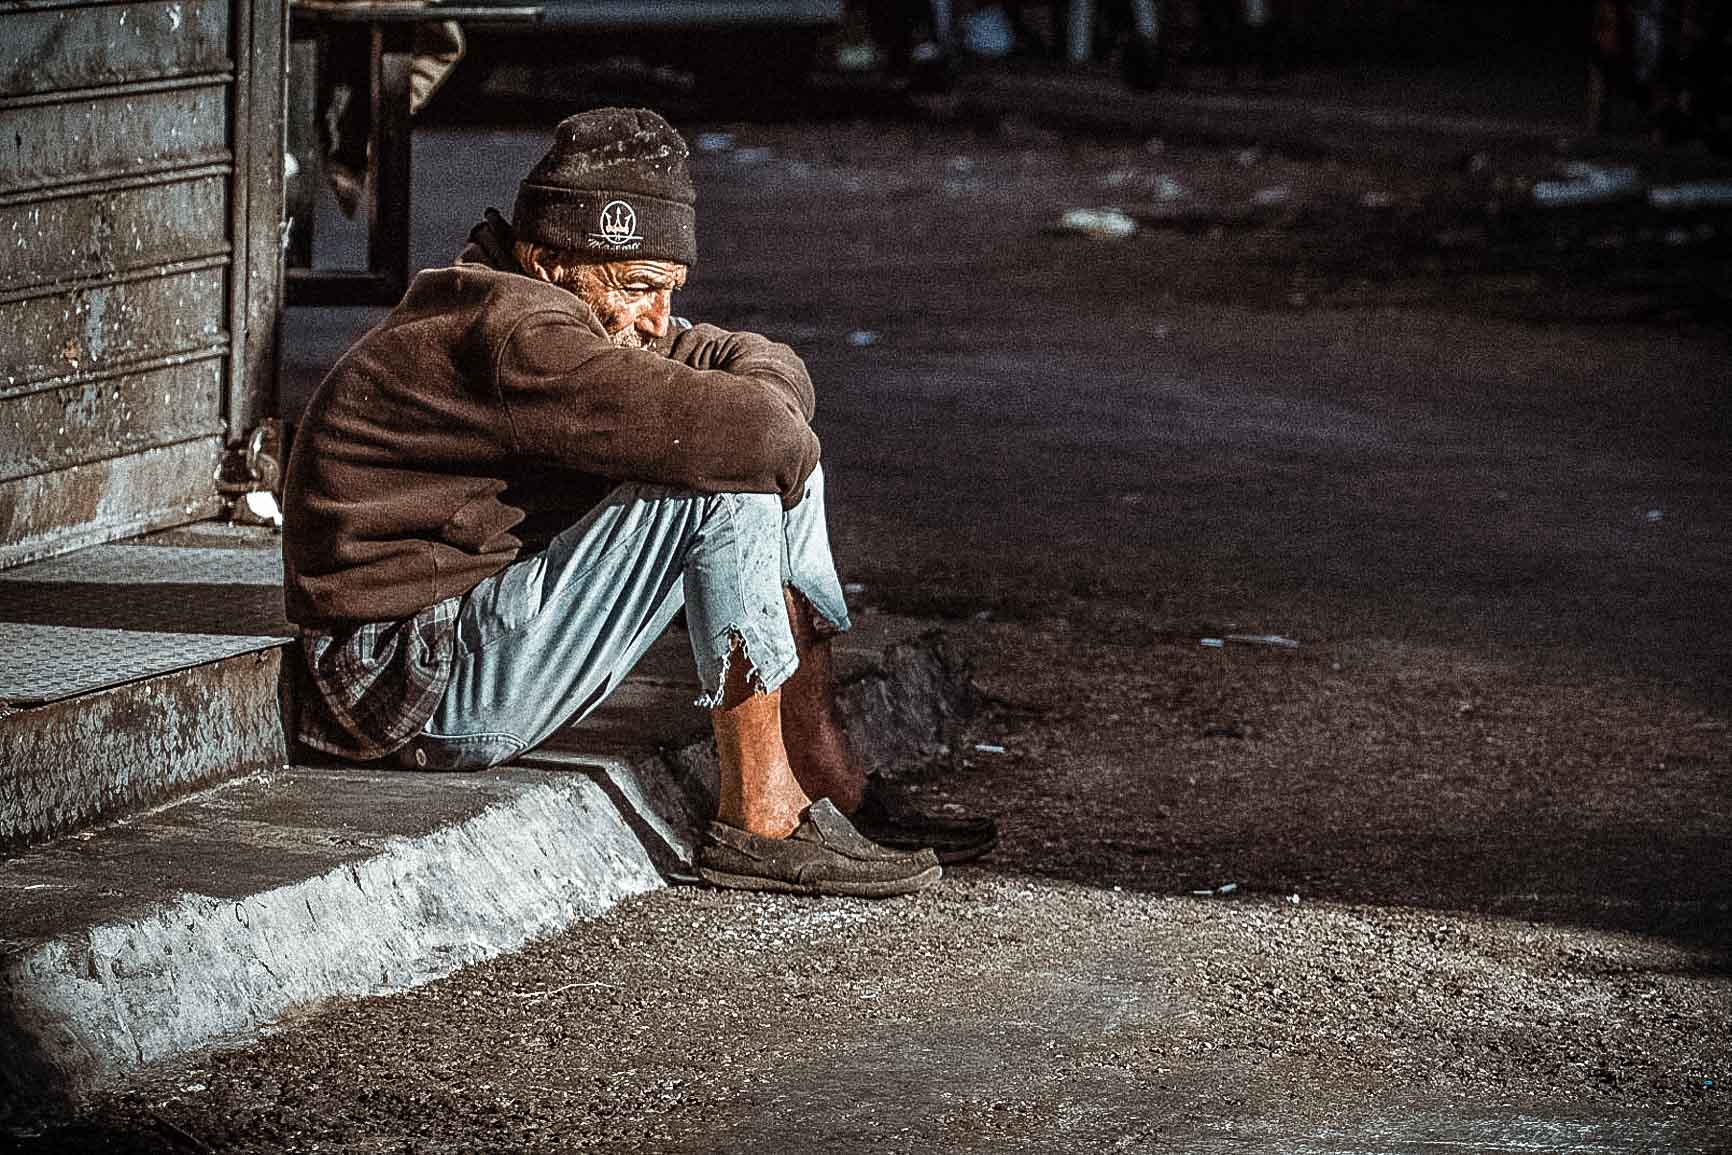 В Москве установили решетки с шипами на вентиляционных шахтах, чтобы бездомные не спали на них